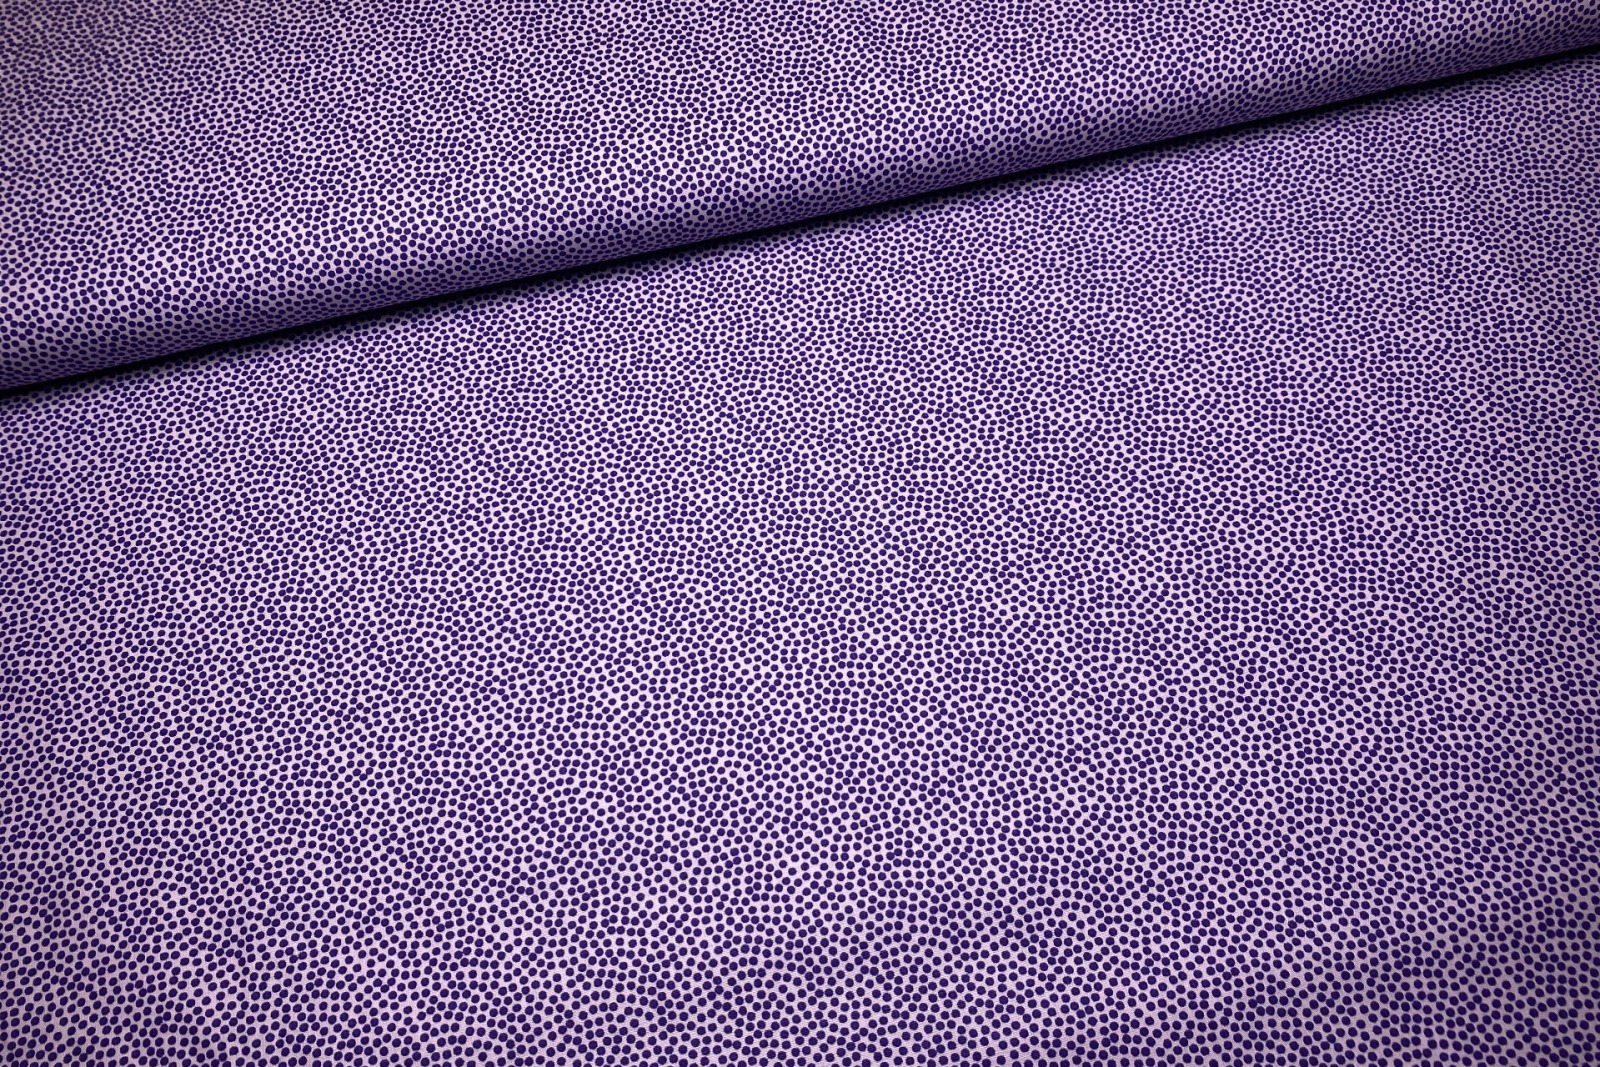 Baumwollwebware - unregelmäßige Punkte - flieder/violett - 100% Baumwolle - Dotty - Swafing 3